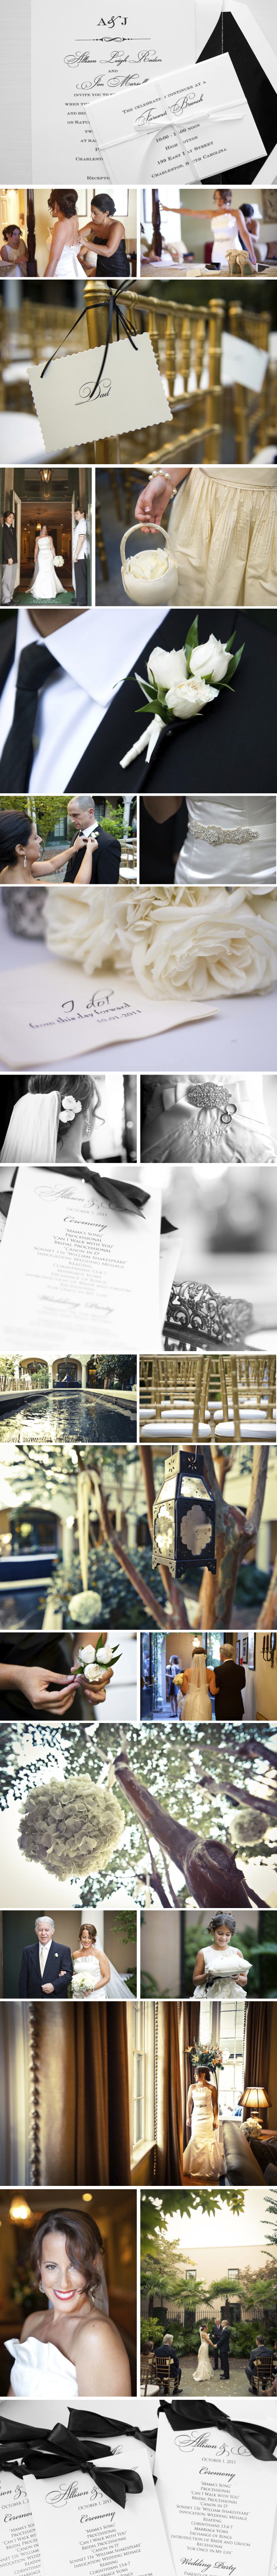 wedding blogs | wedding ideas